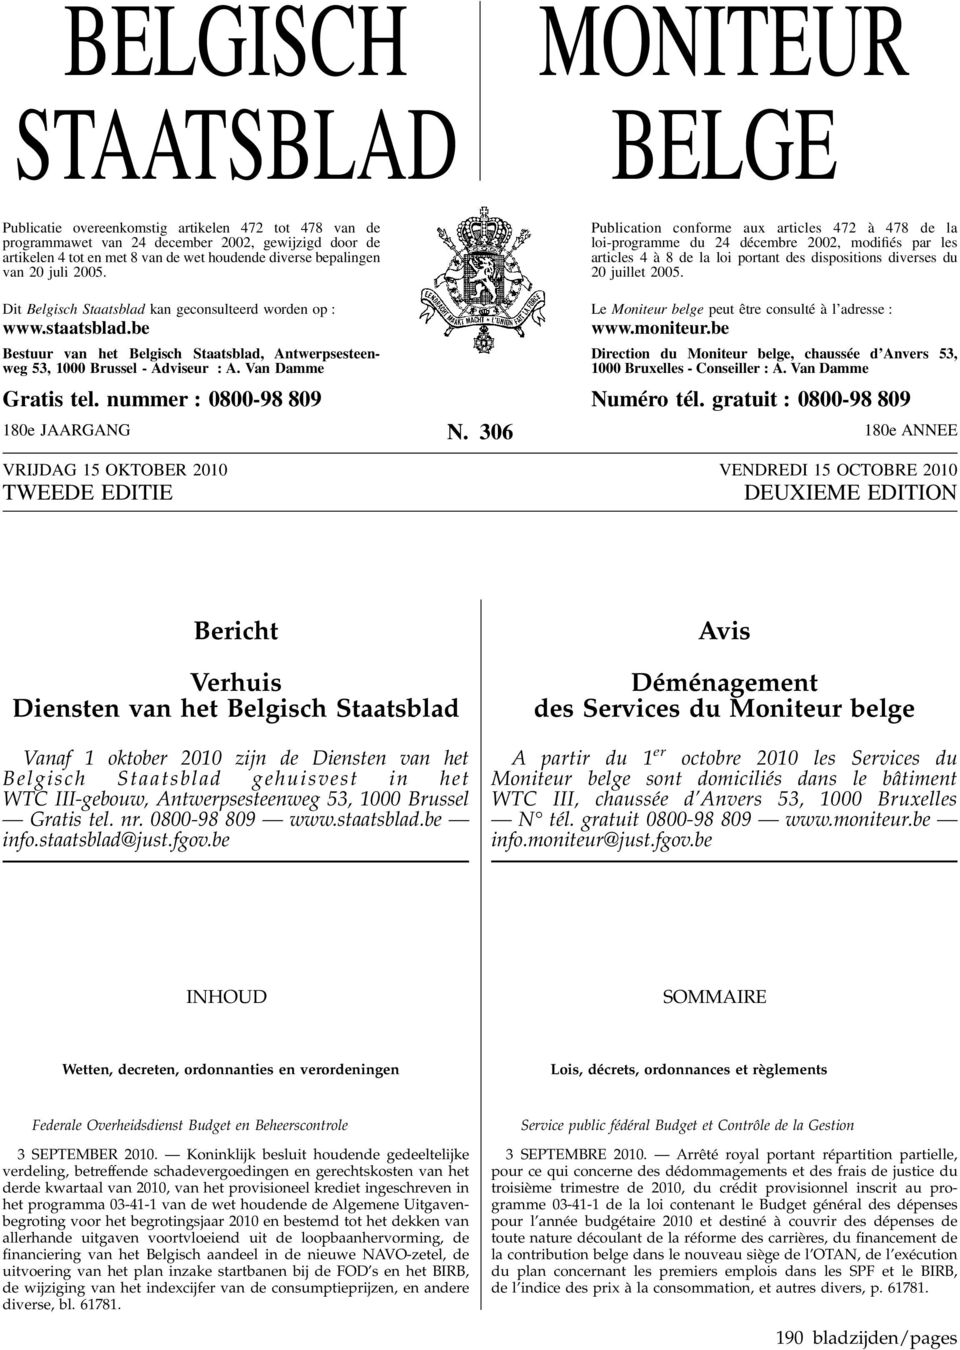 Publication conforme aux articles 472 à 478 de la loi-programme du 24 décembre 2002, modifiés par les articles 4 à 8 de la loi portant des dispositions diverses du 20 juillet 2005.